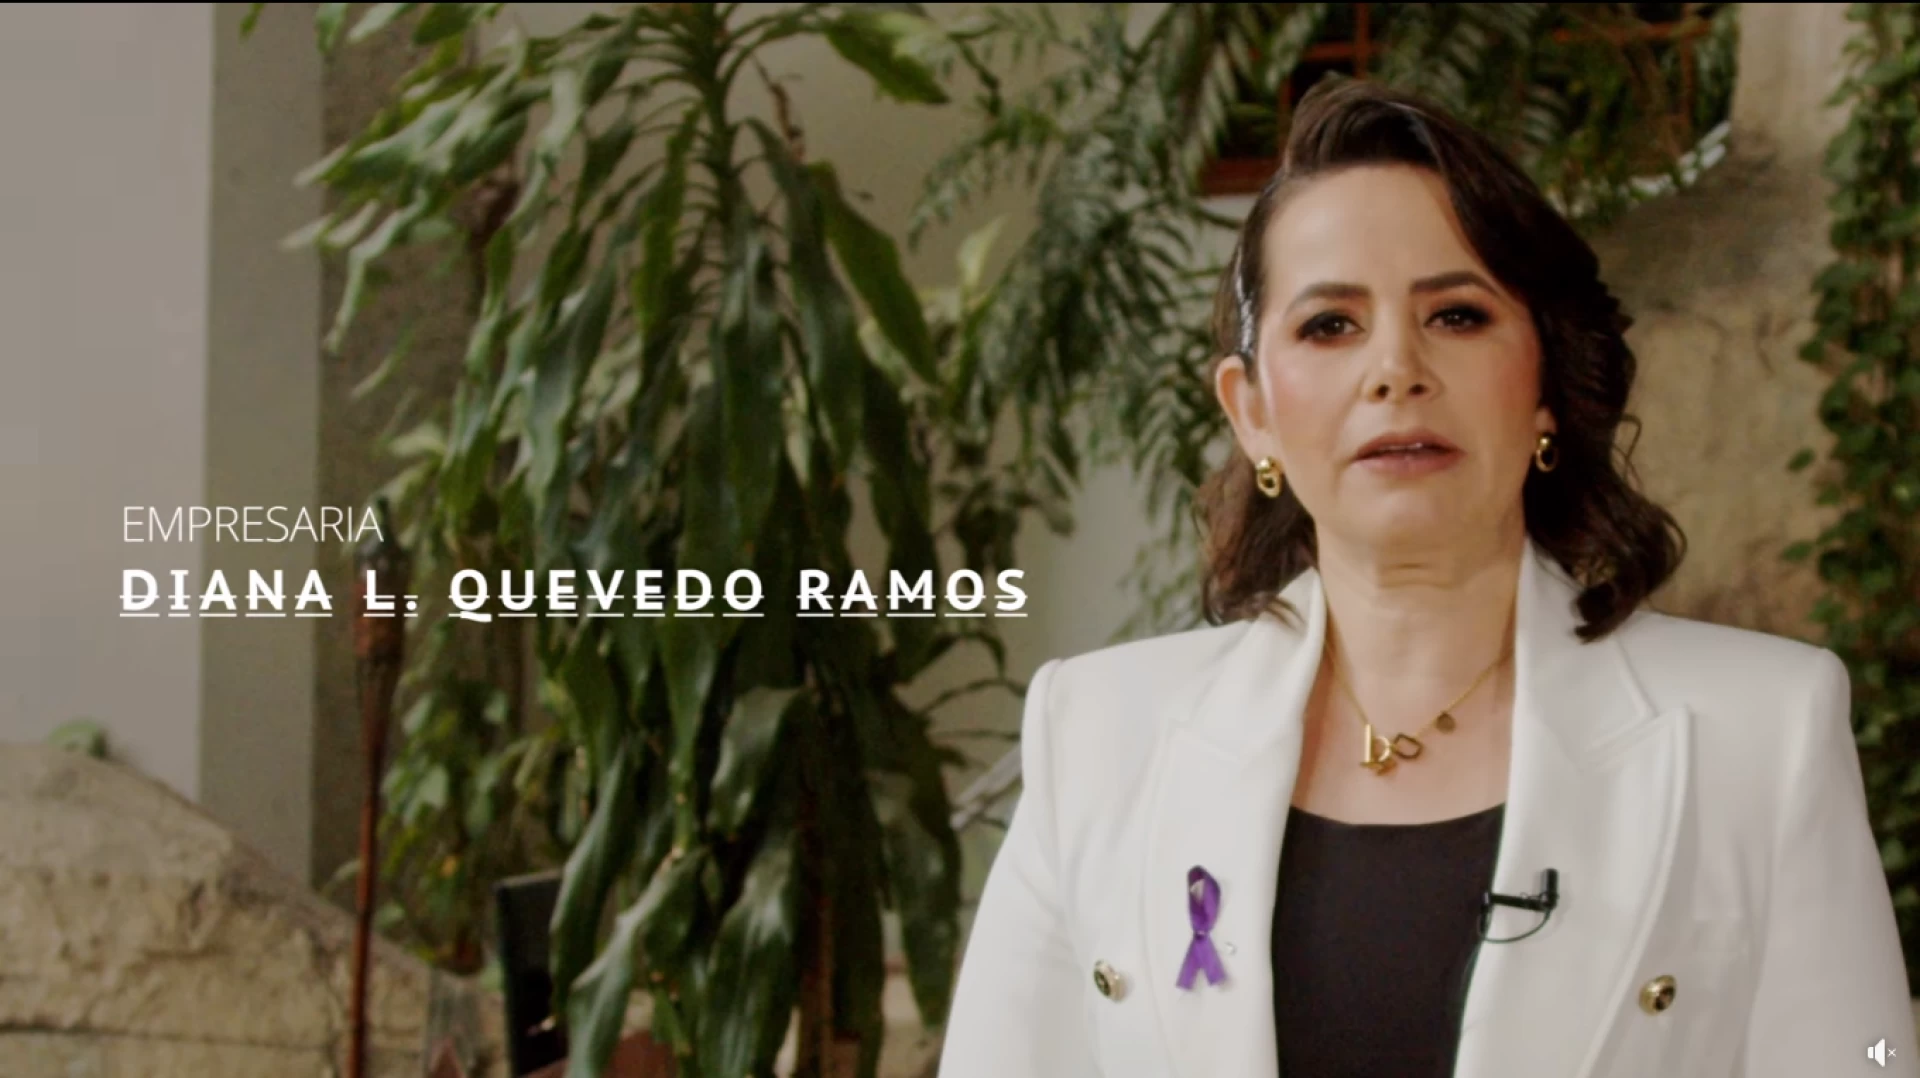 Historia de Diana L. Quevedo Ramos